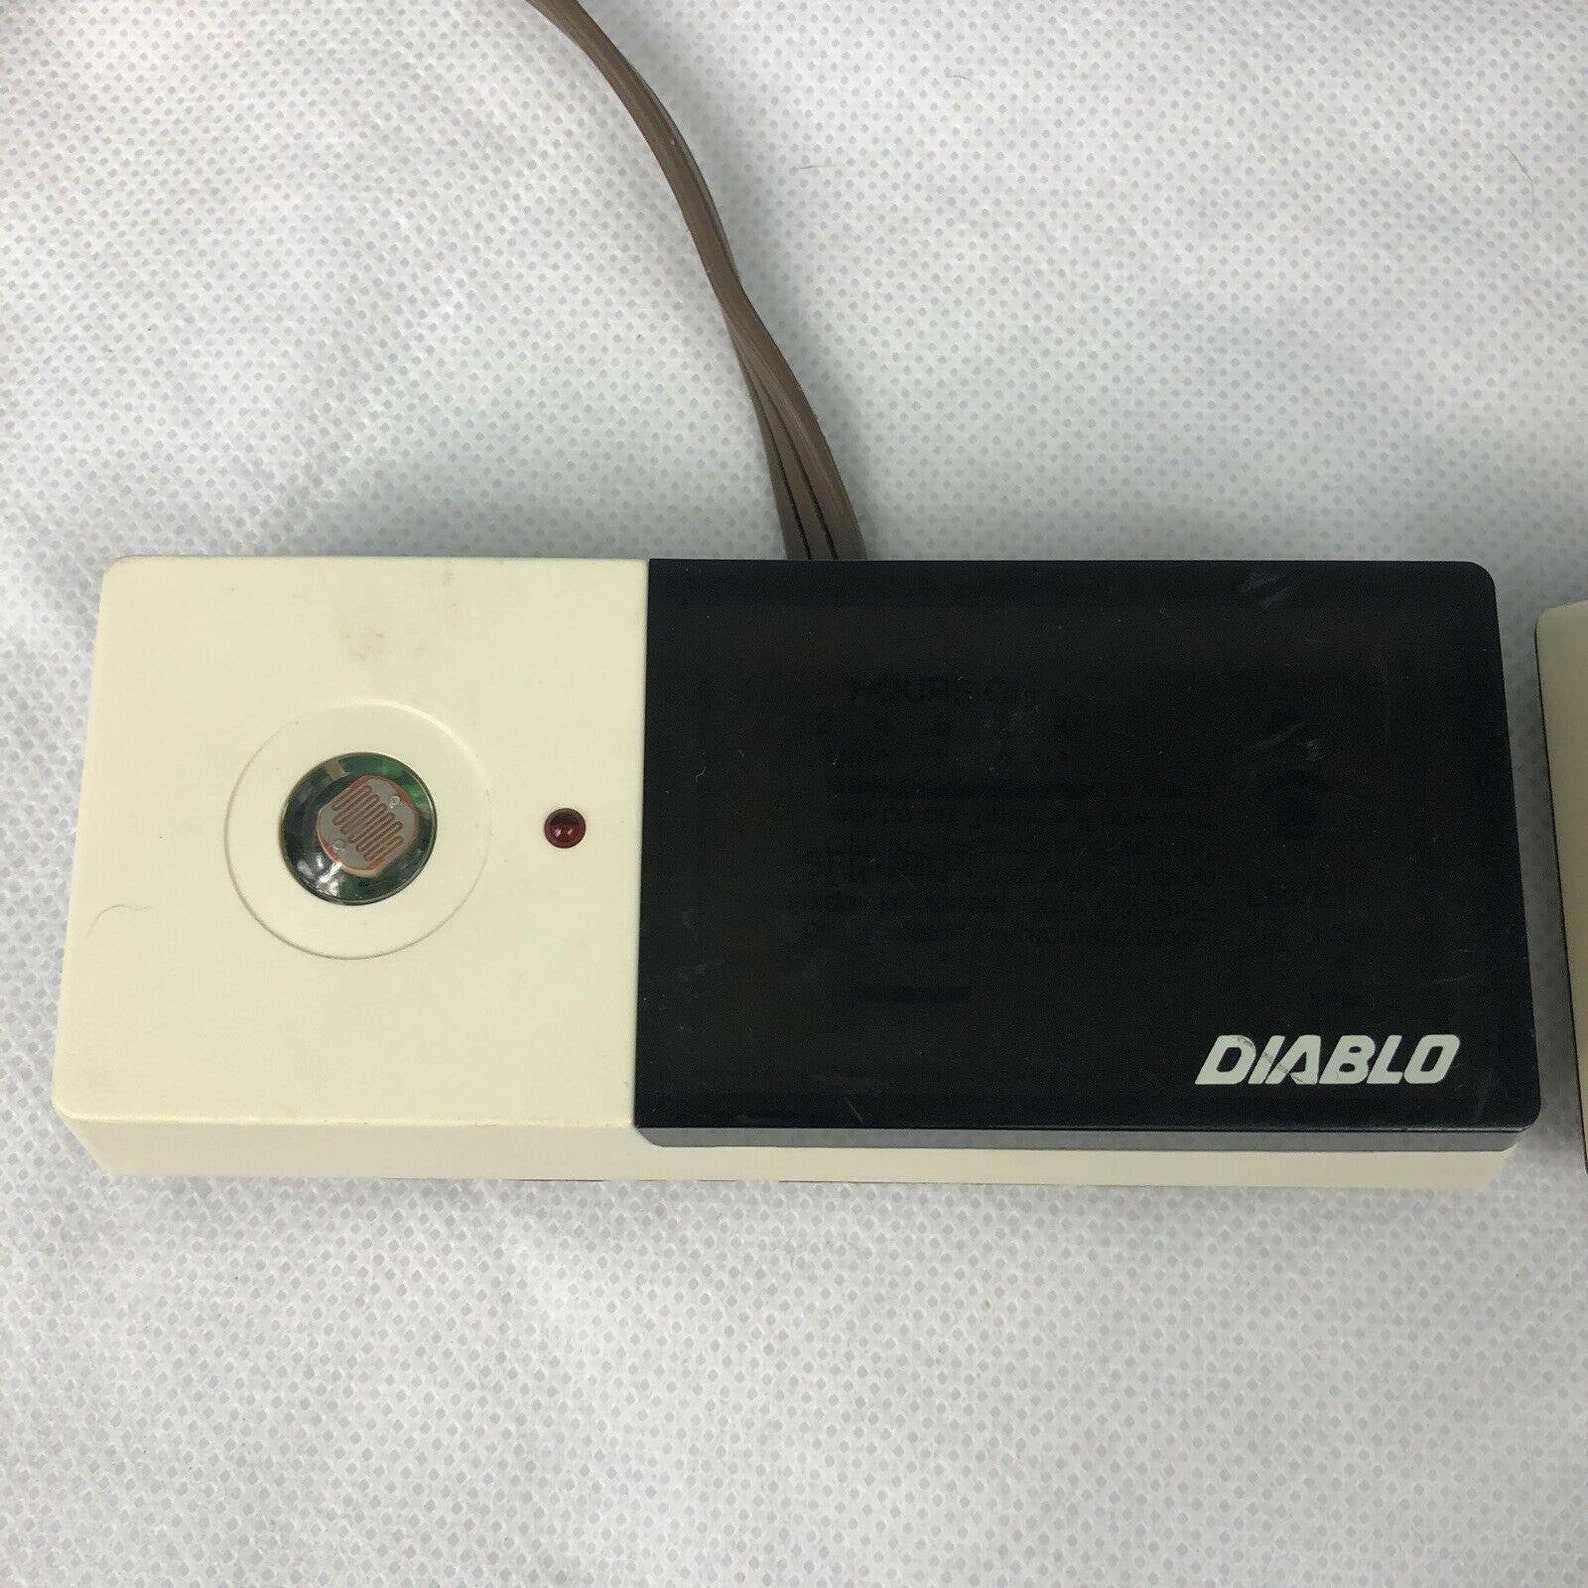 Vintage Diablo Sensor Timer Lot of 2  Etsy